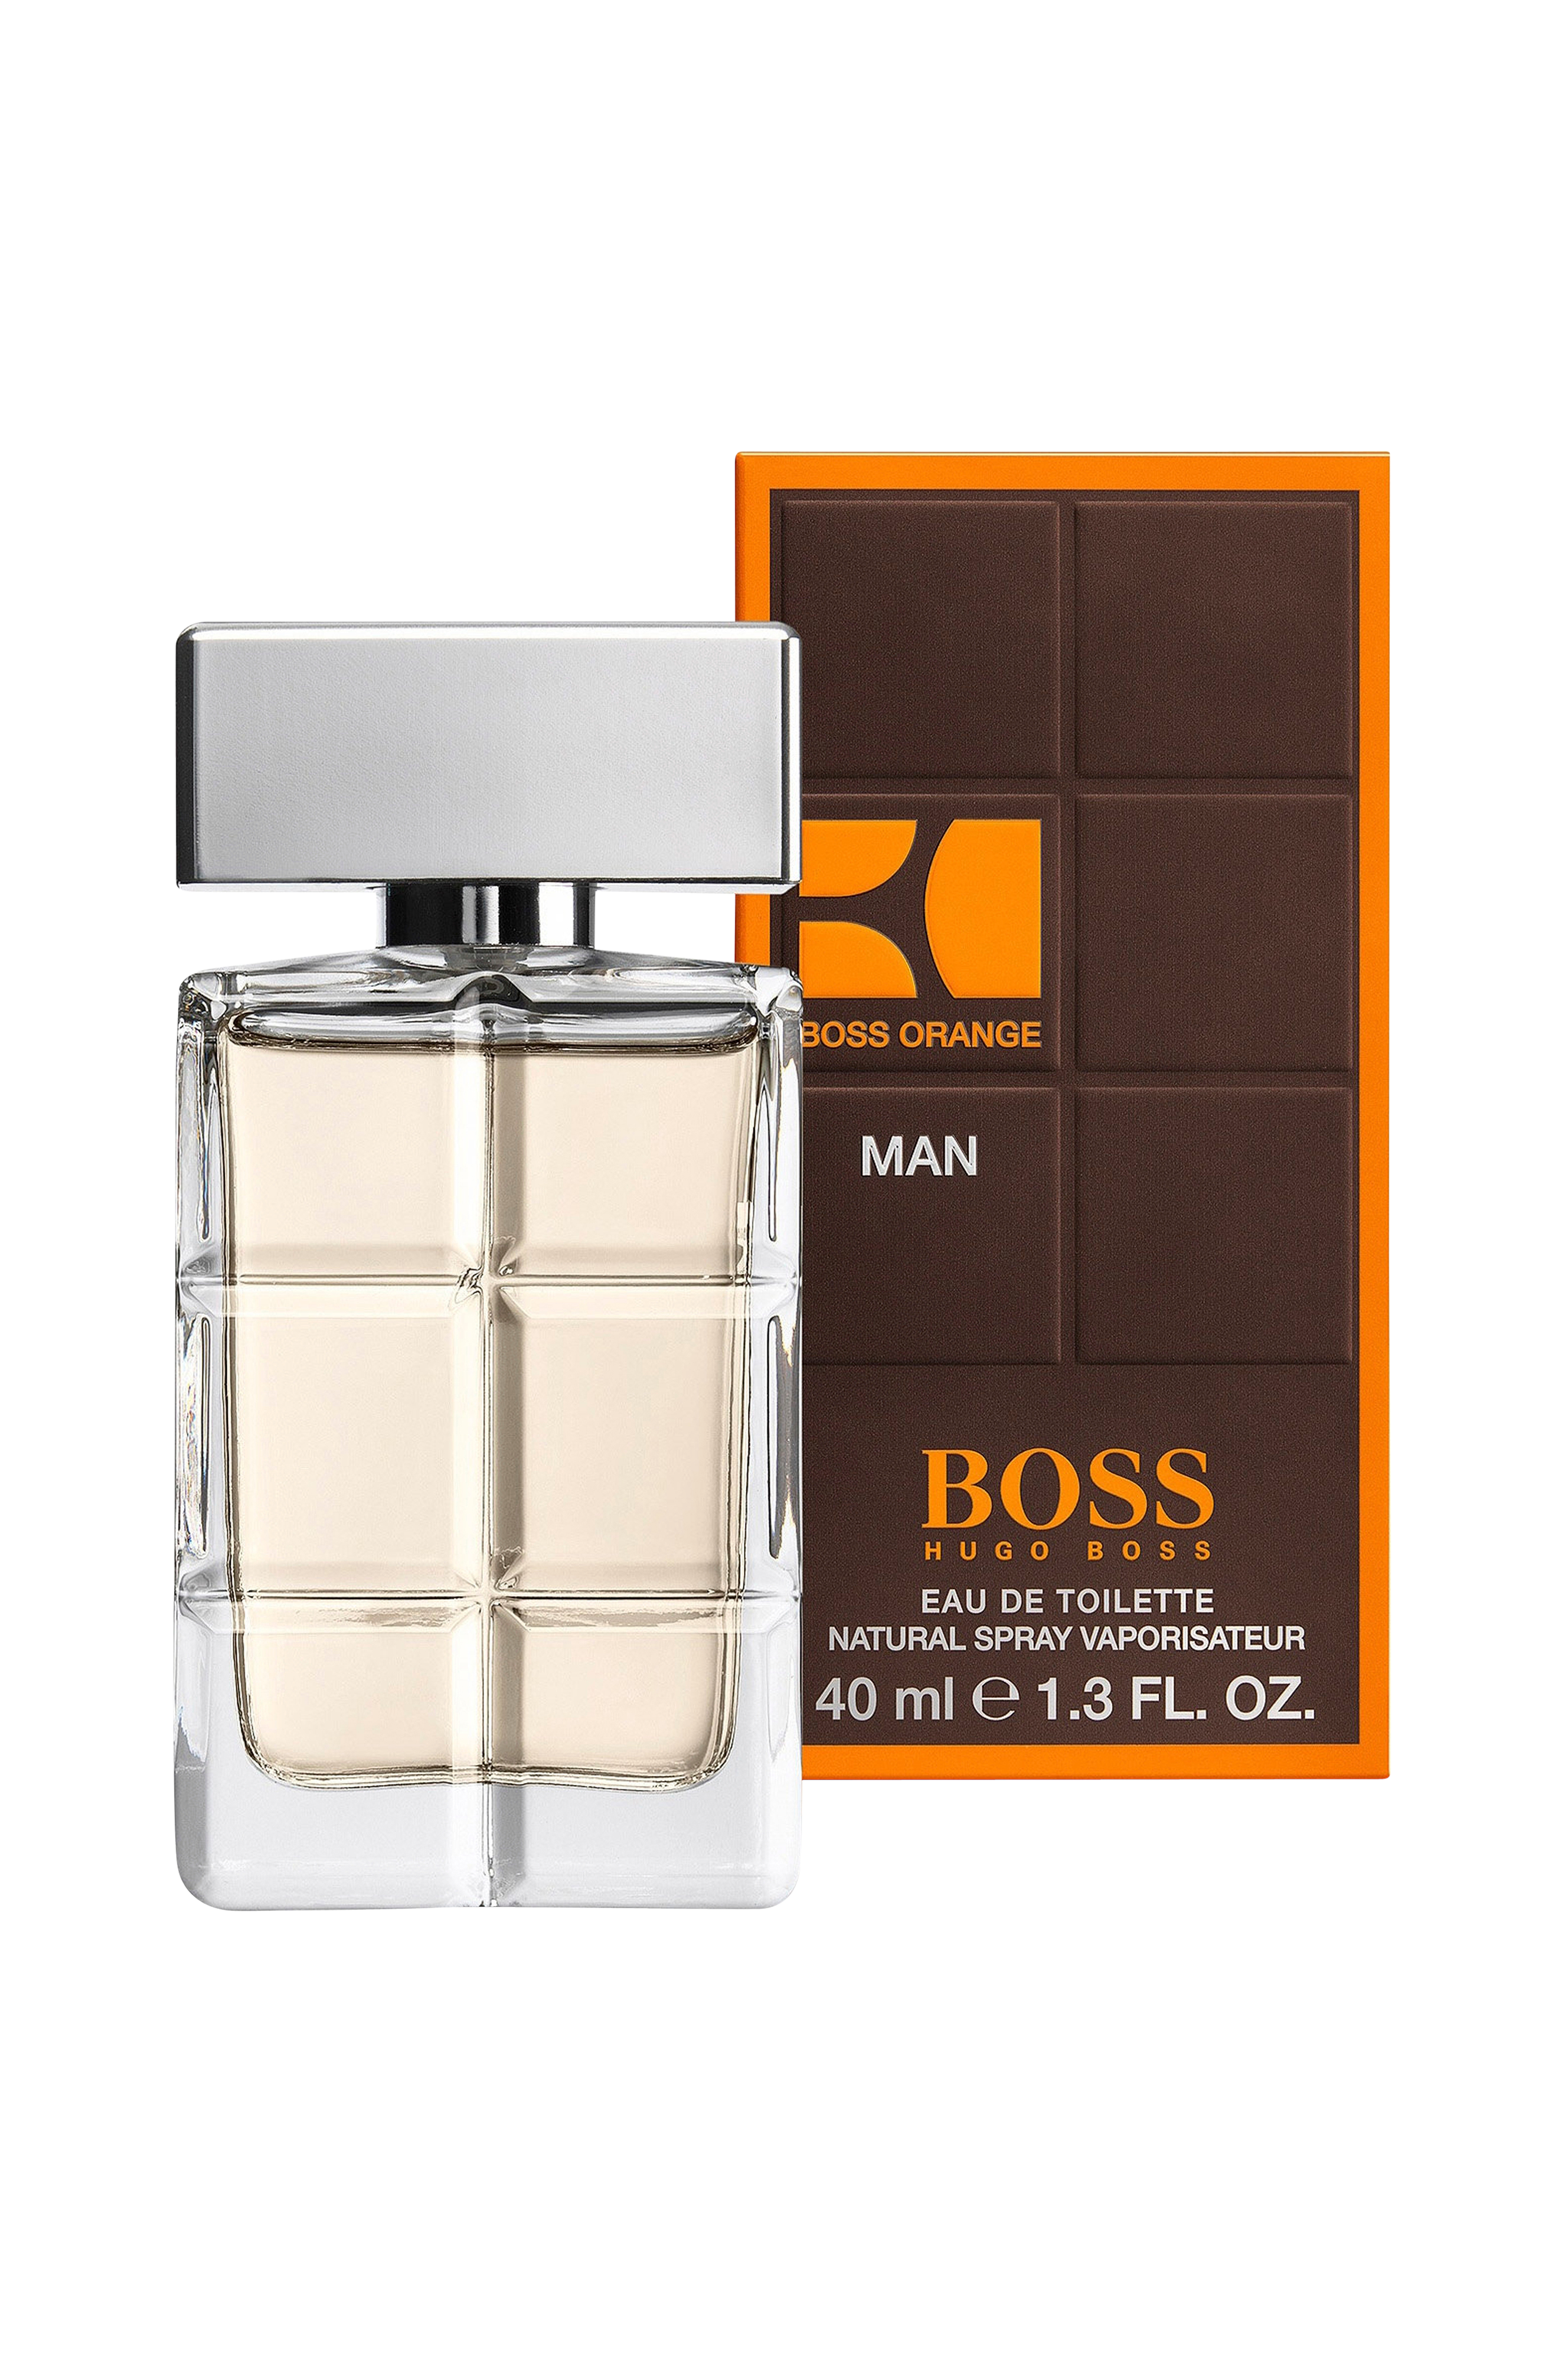 Guinness appetit Robe Hugo Boss Orange Man EdT 40 ml - Parfume | ellos